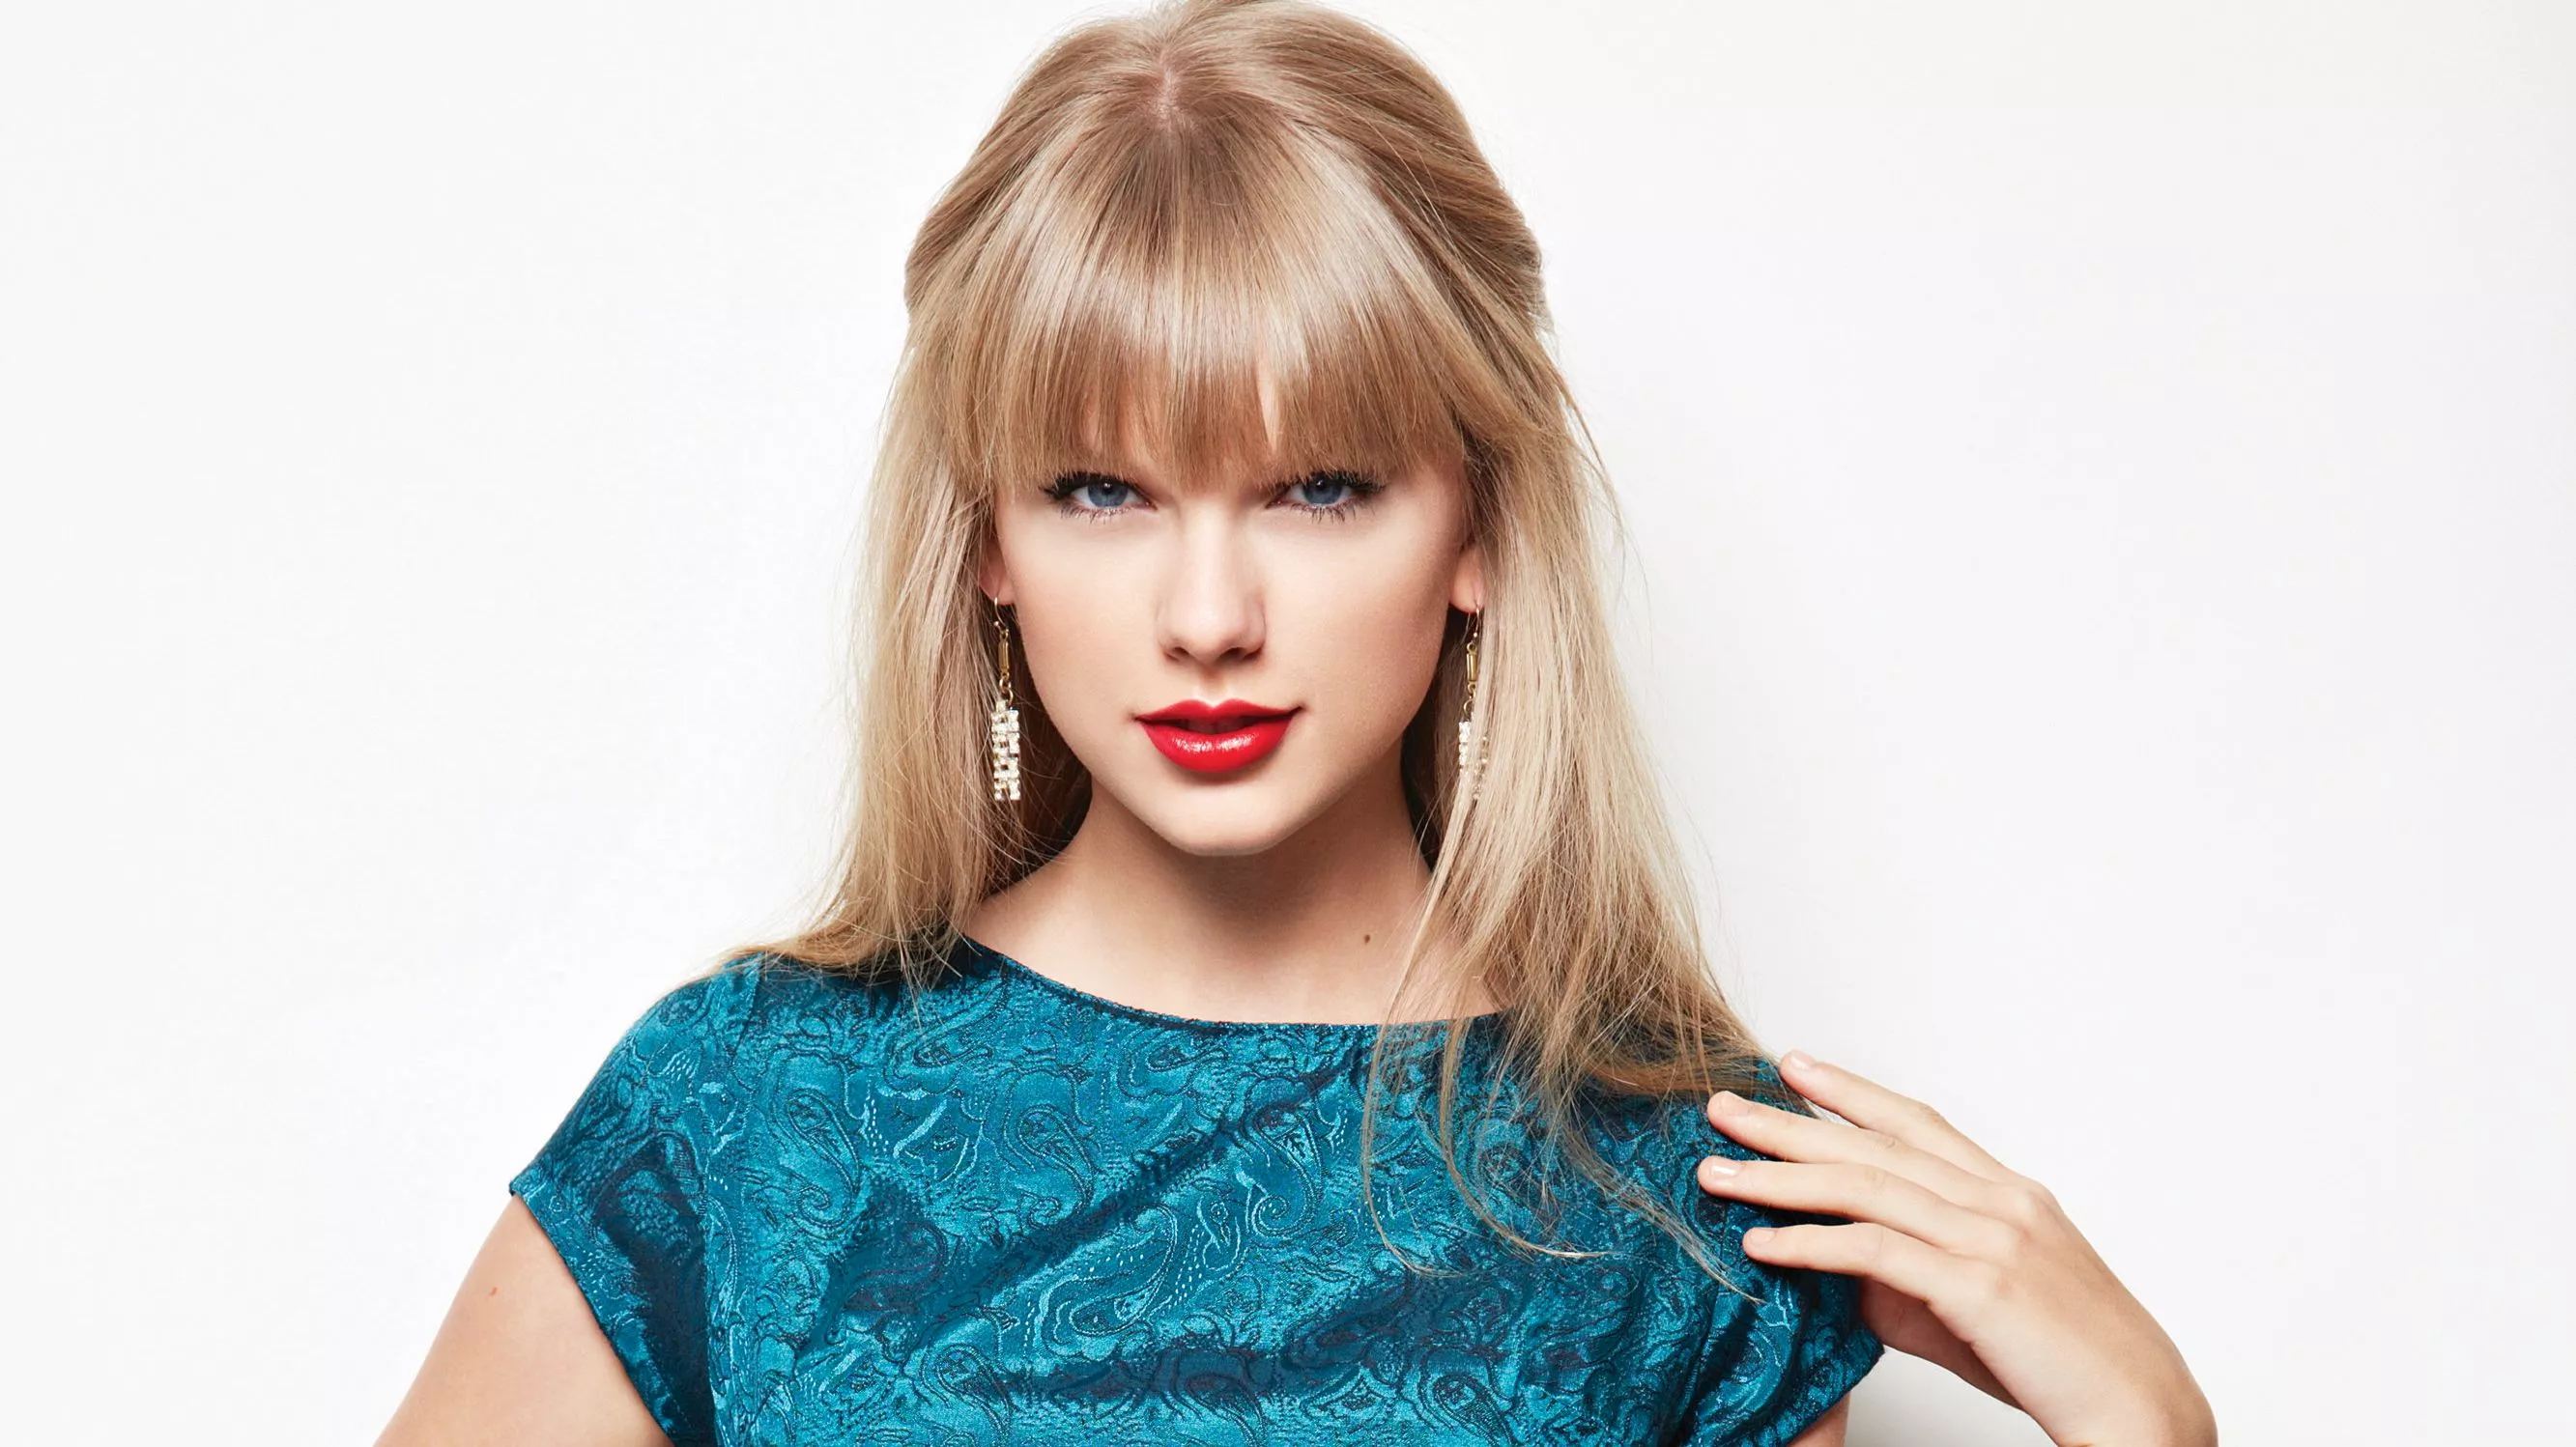 Taylor Swifts albums sætter millionrekord